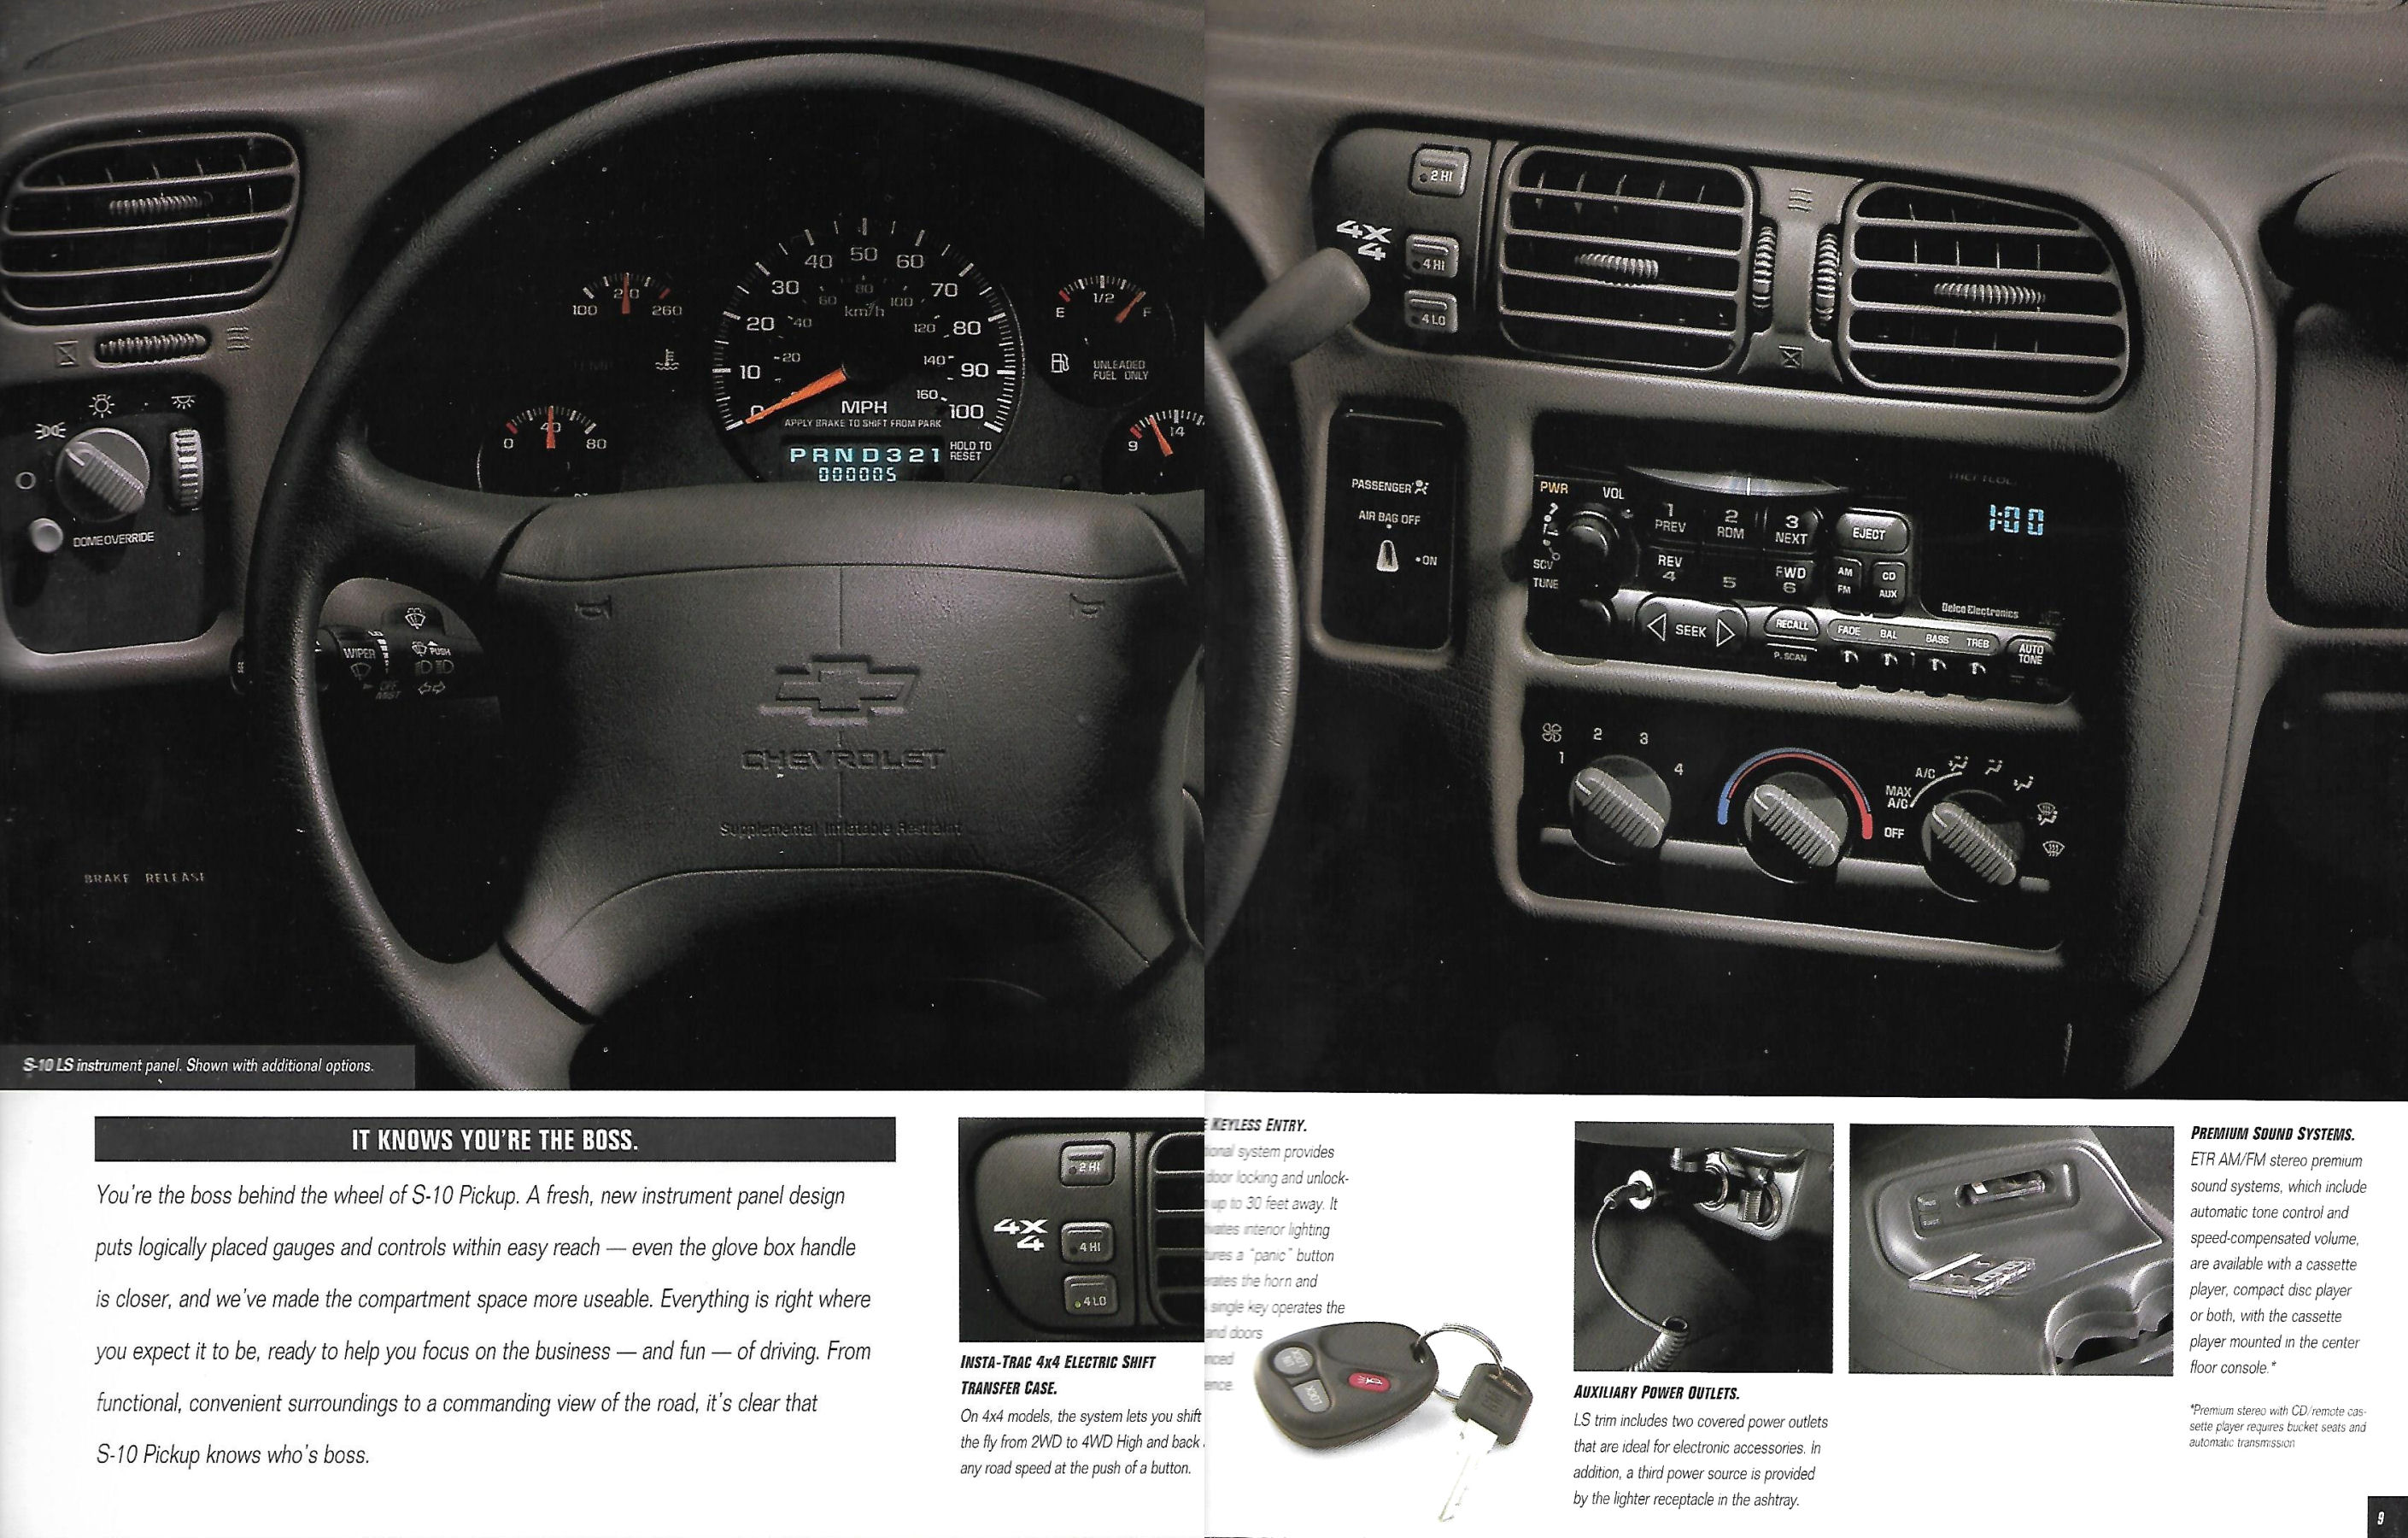 1998 Chevrolet S-10 Pickup-08-09